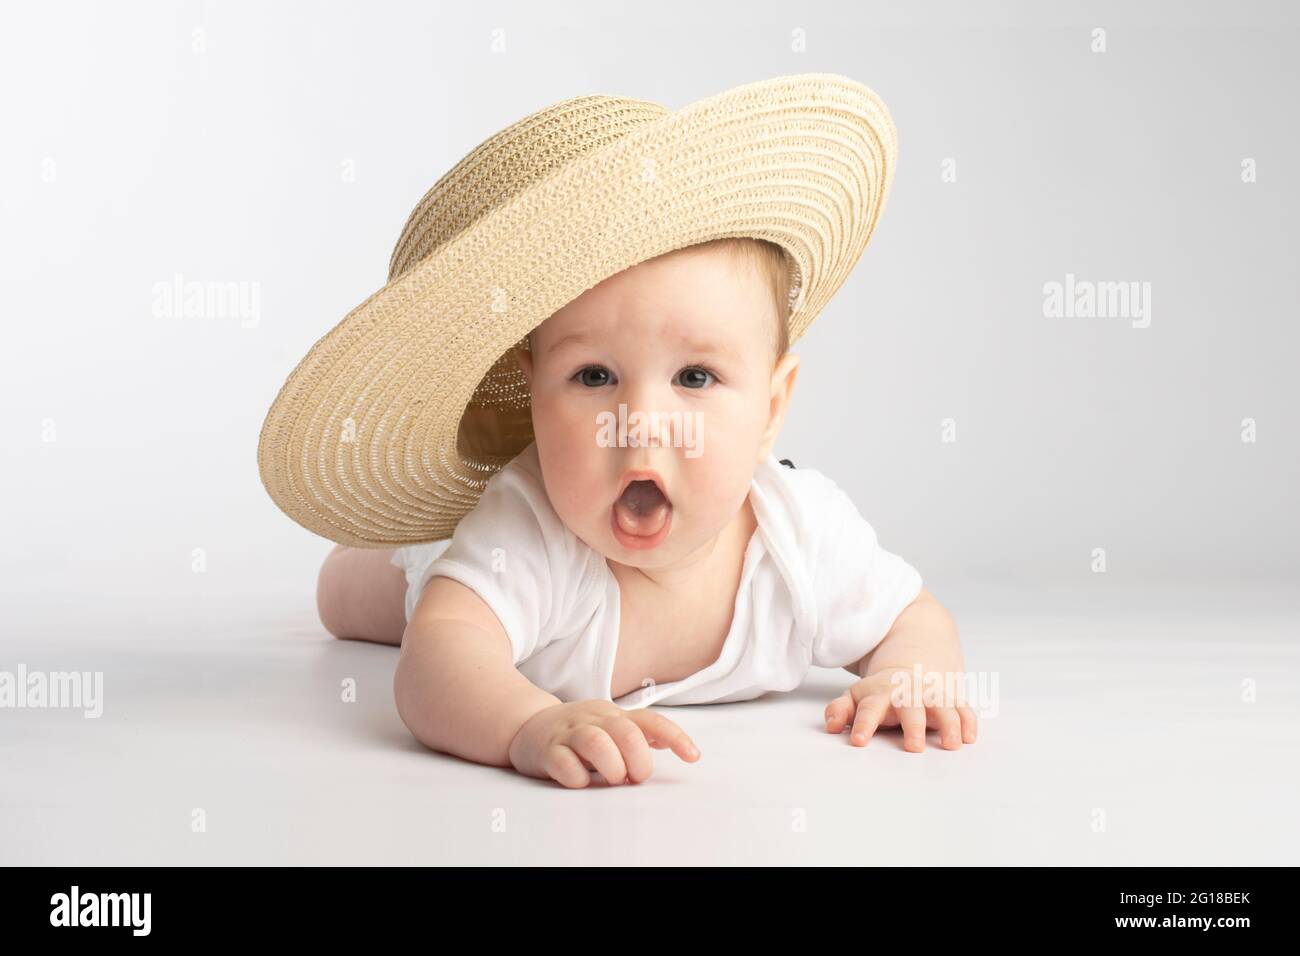 Niedliches Baby in einem großen Strohhut, auf weißem Hintergrund  Stockfotografie - Alamy